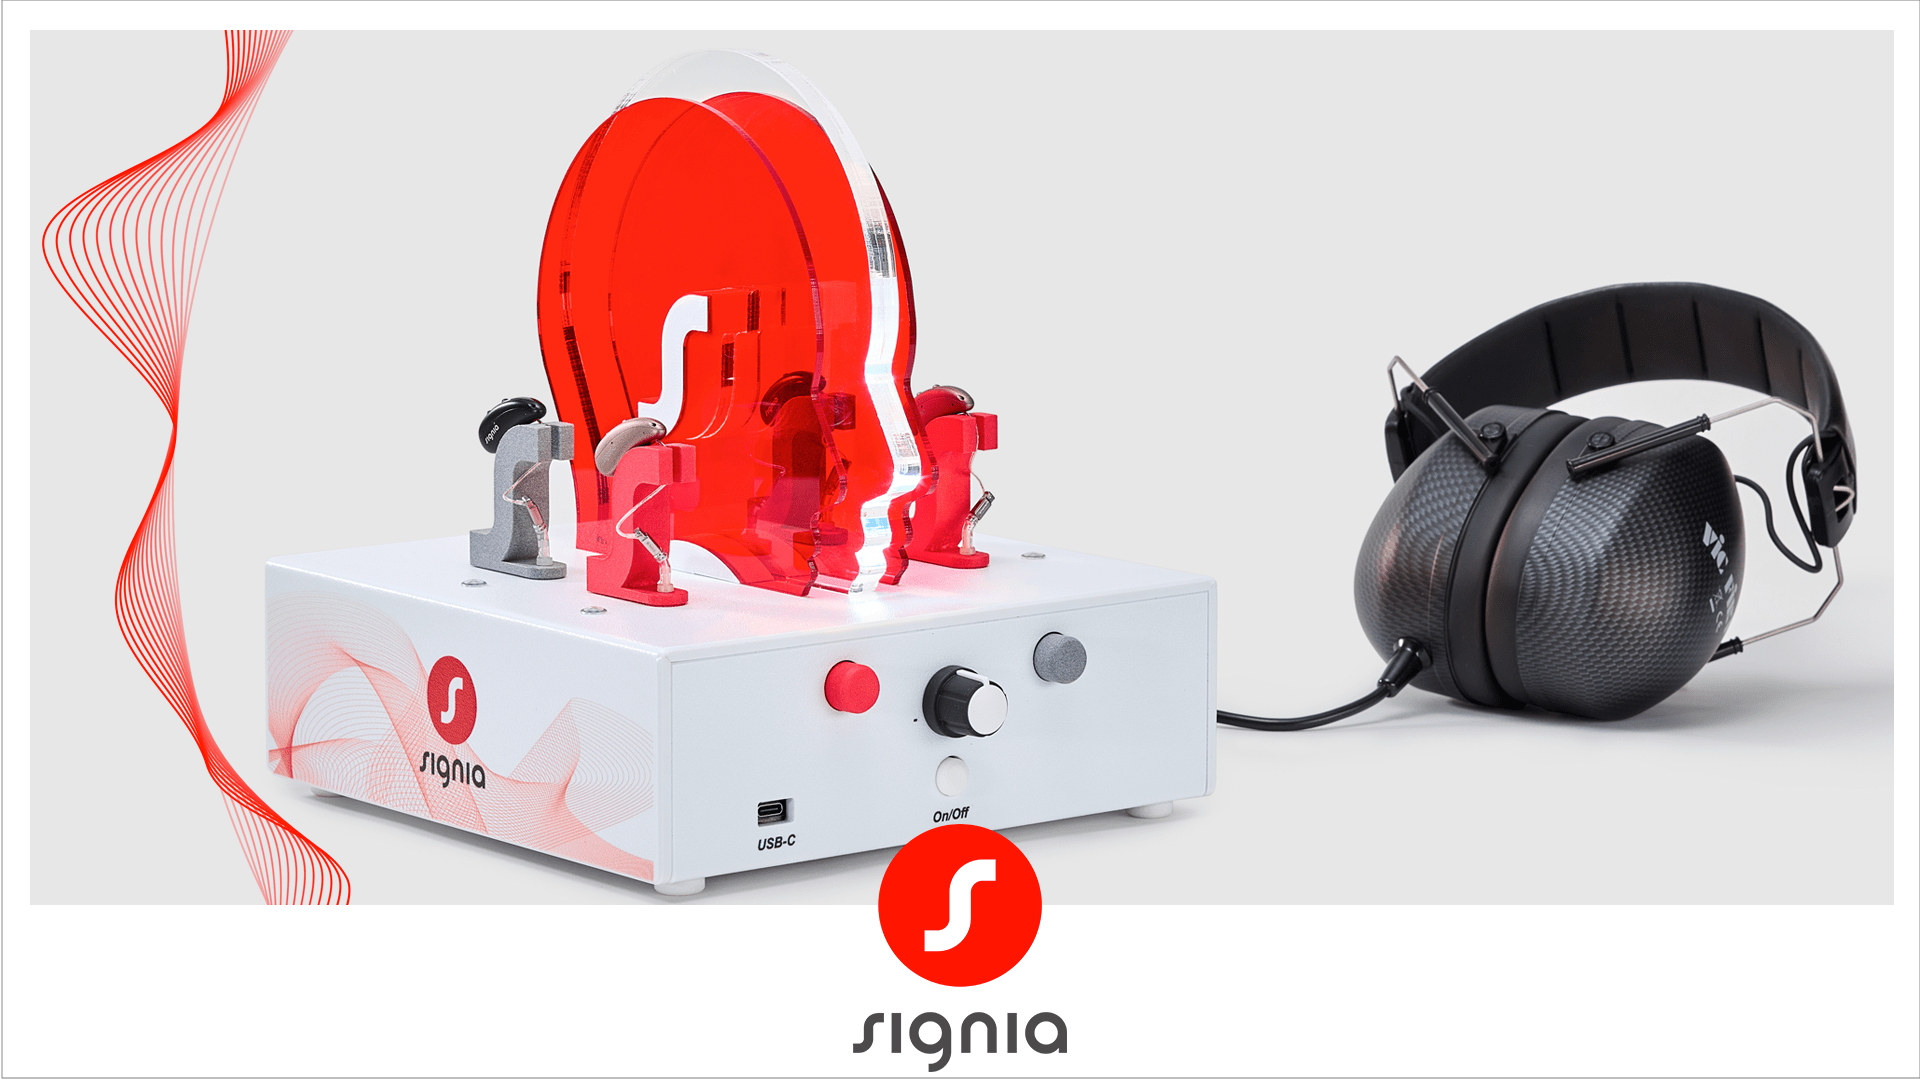 appareil hearlive par Signia avec un casque : outil de démonstration pour comparer les aides auditives